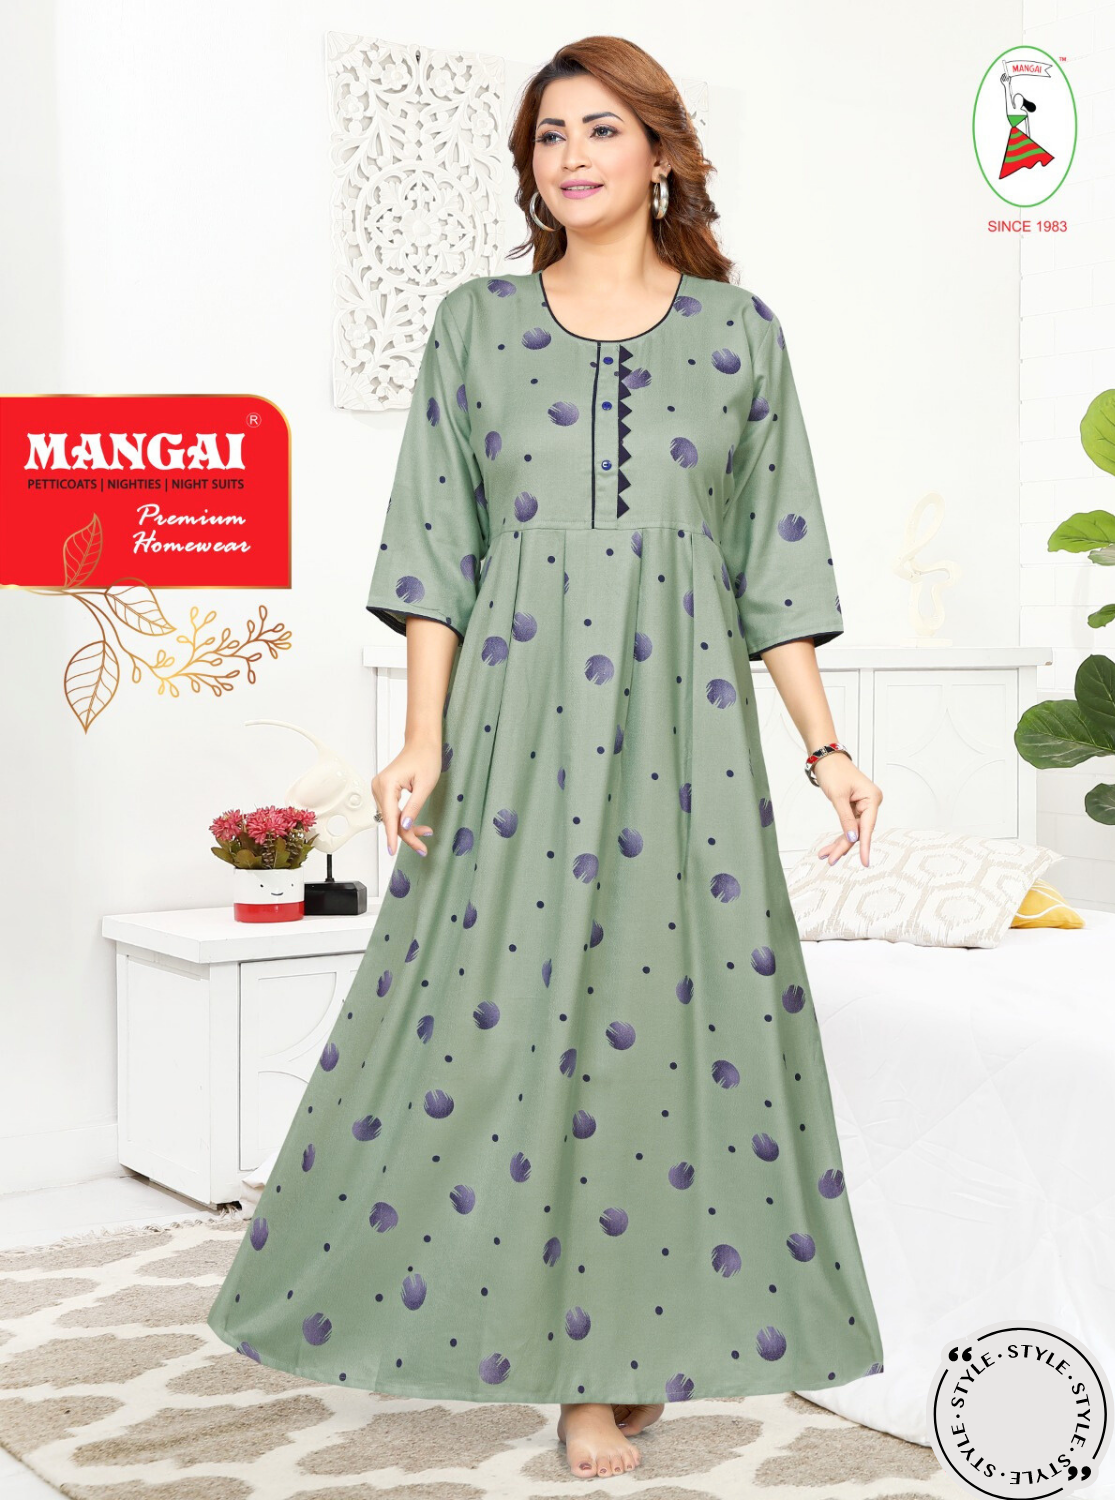 MANGAI Premium Alpine KURTI Style | Beautiful Stylish KURTI Model | Trendy Printed 3/4 Sleeve Night Wear